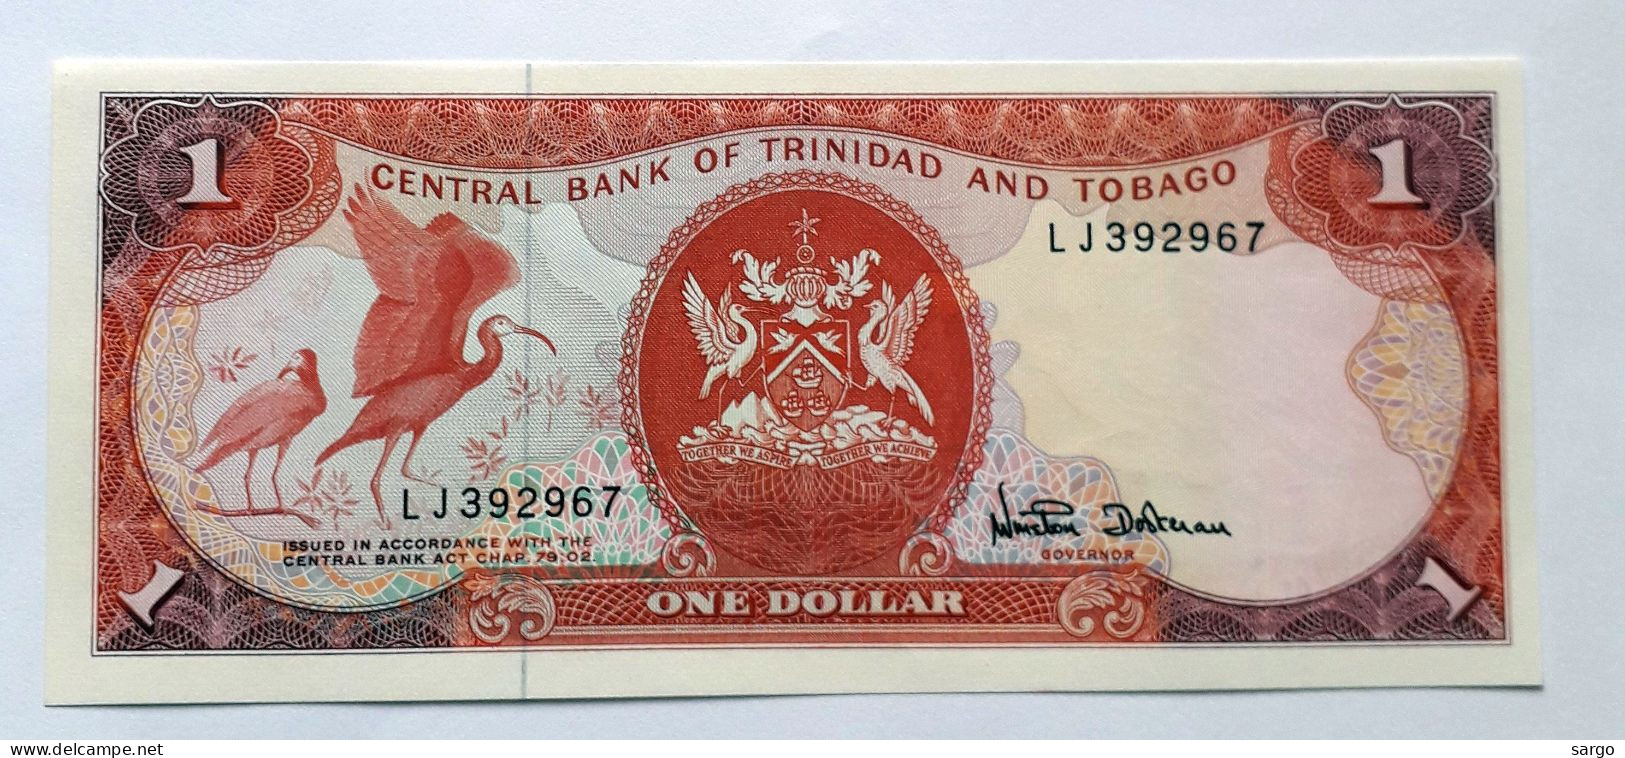 TRINIDAD AND TOBAGO  - 1 DOLLAR  - P 36  (1985) - UNC -  BANKNOTES - PAPER MONEY - Trinidad & Tobago